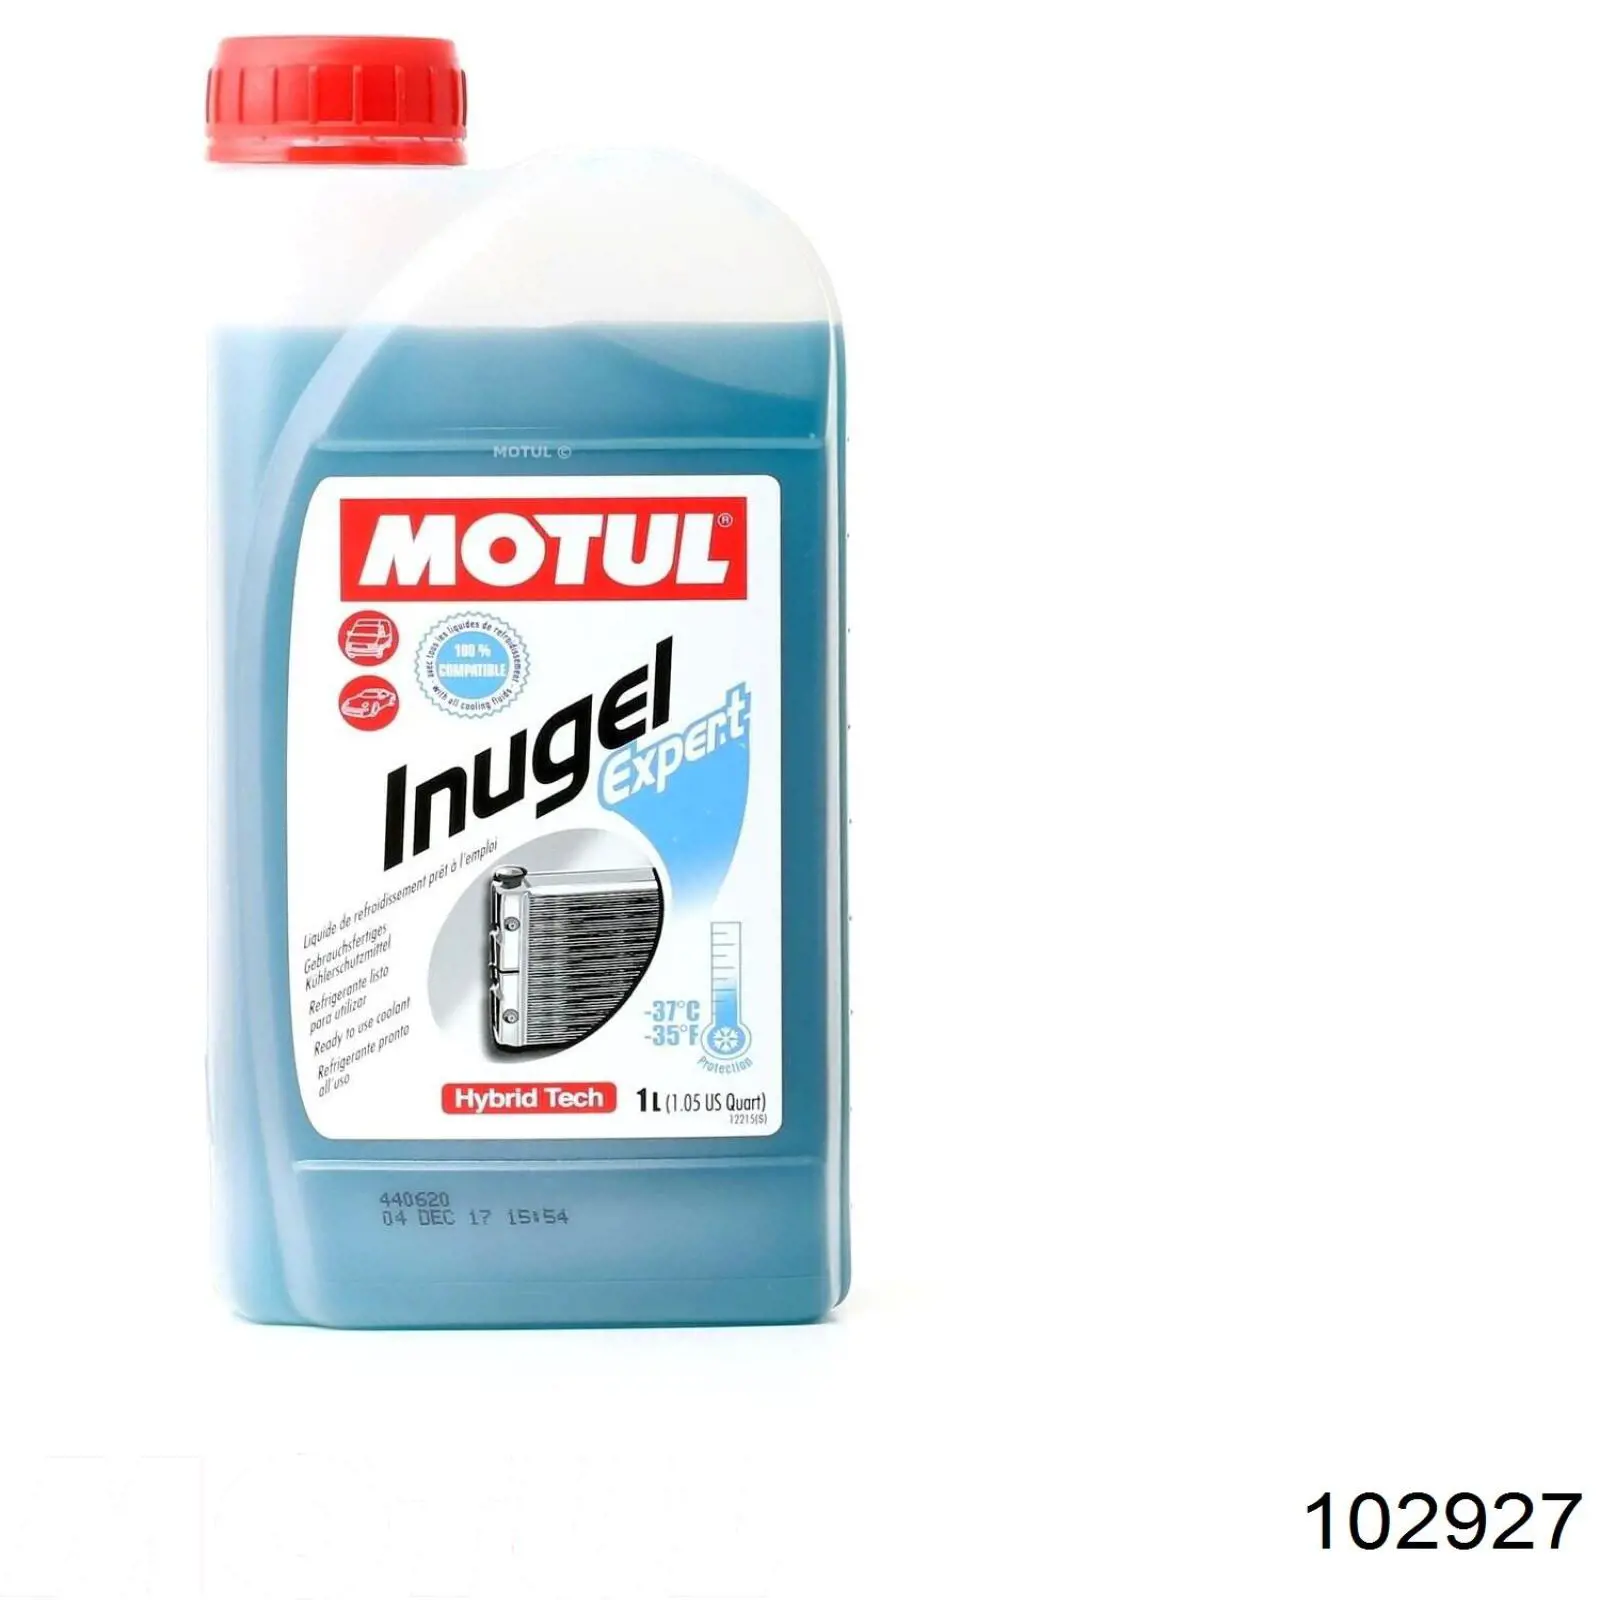 Антифриз Motul Inugel Expert Сине-зеленый -37 °C 1л (102927)